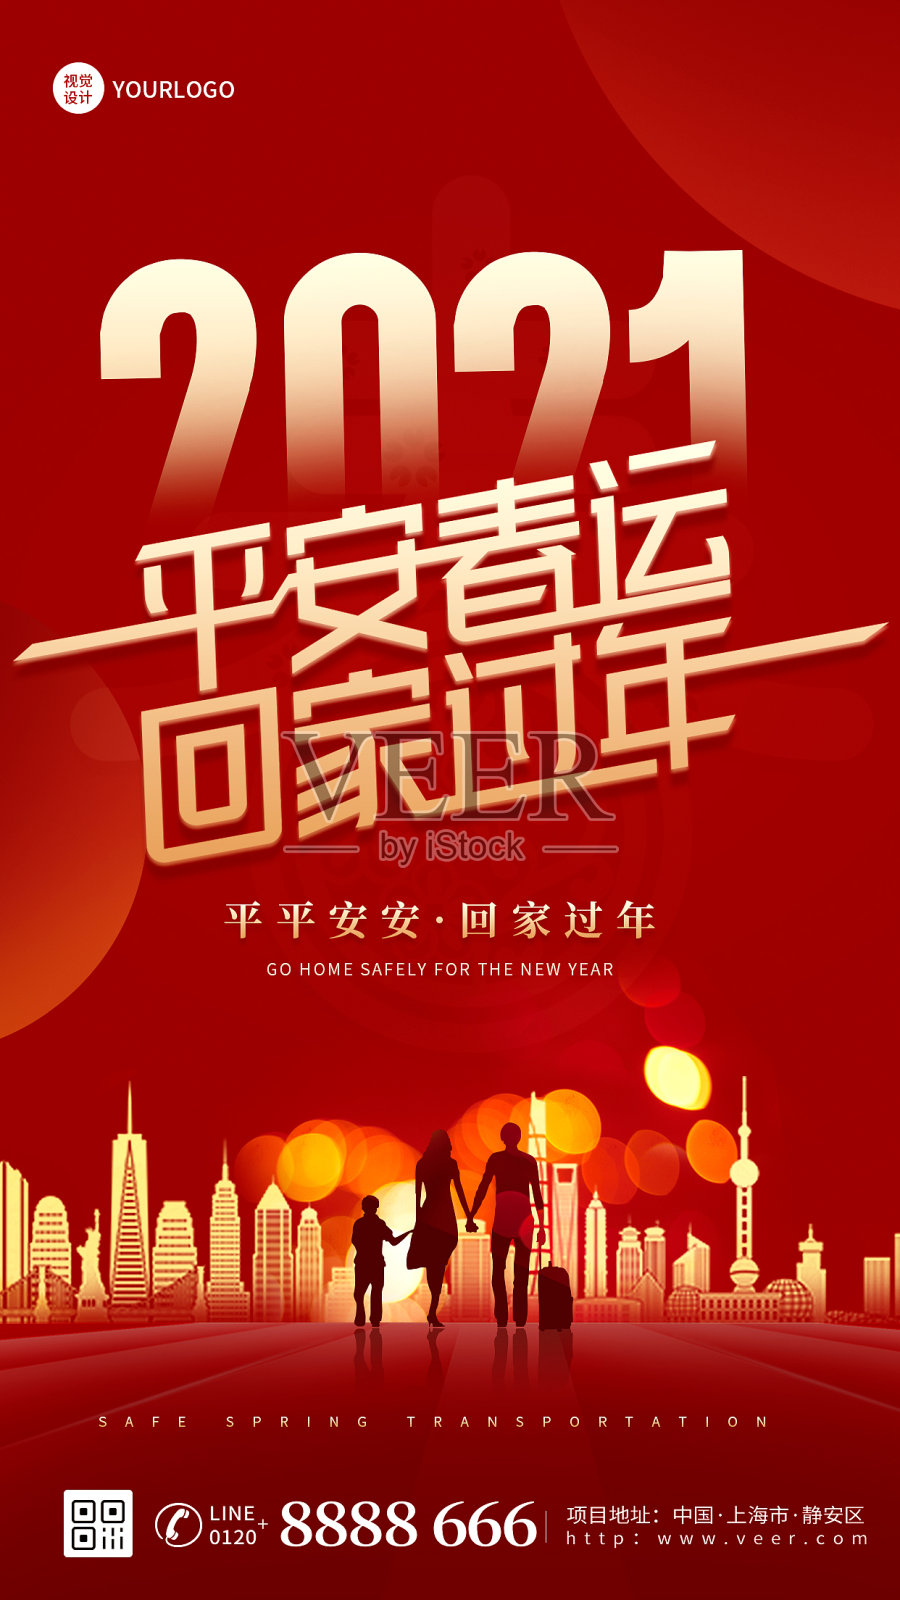 平安春运扁平红色简约大气手机海报设计模板素材